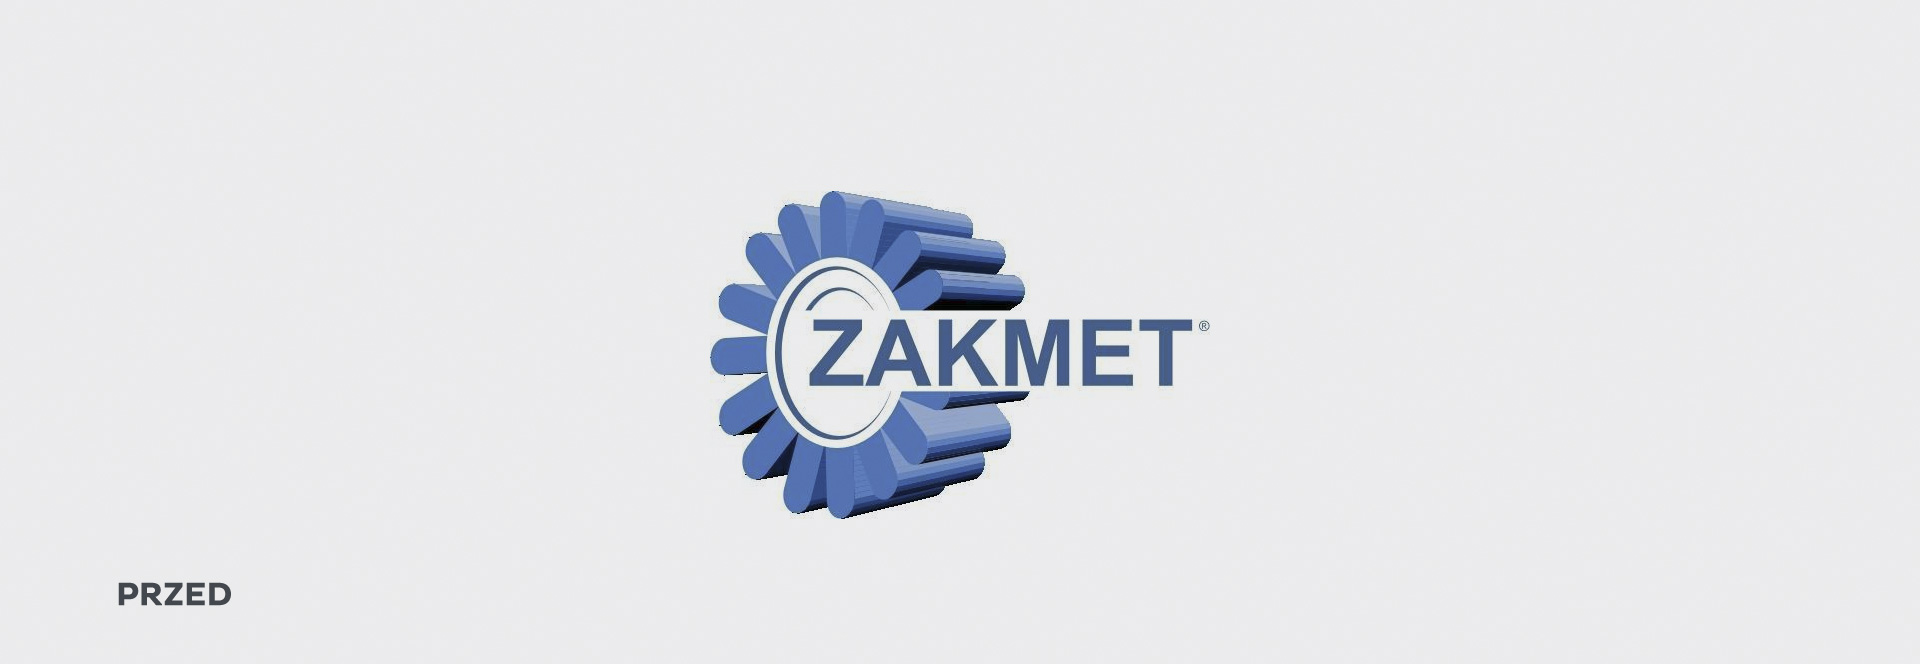 ZAKMET_logo-old